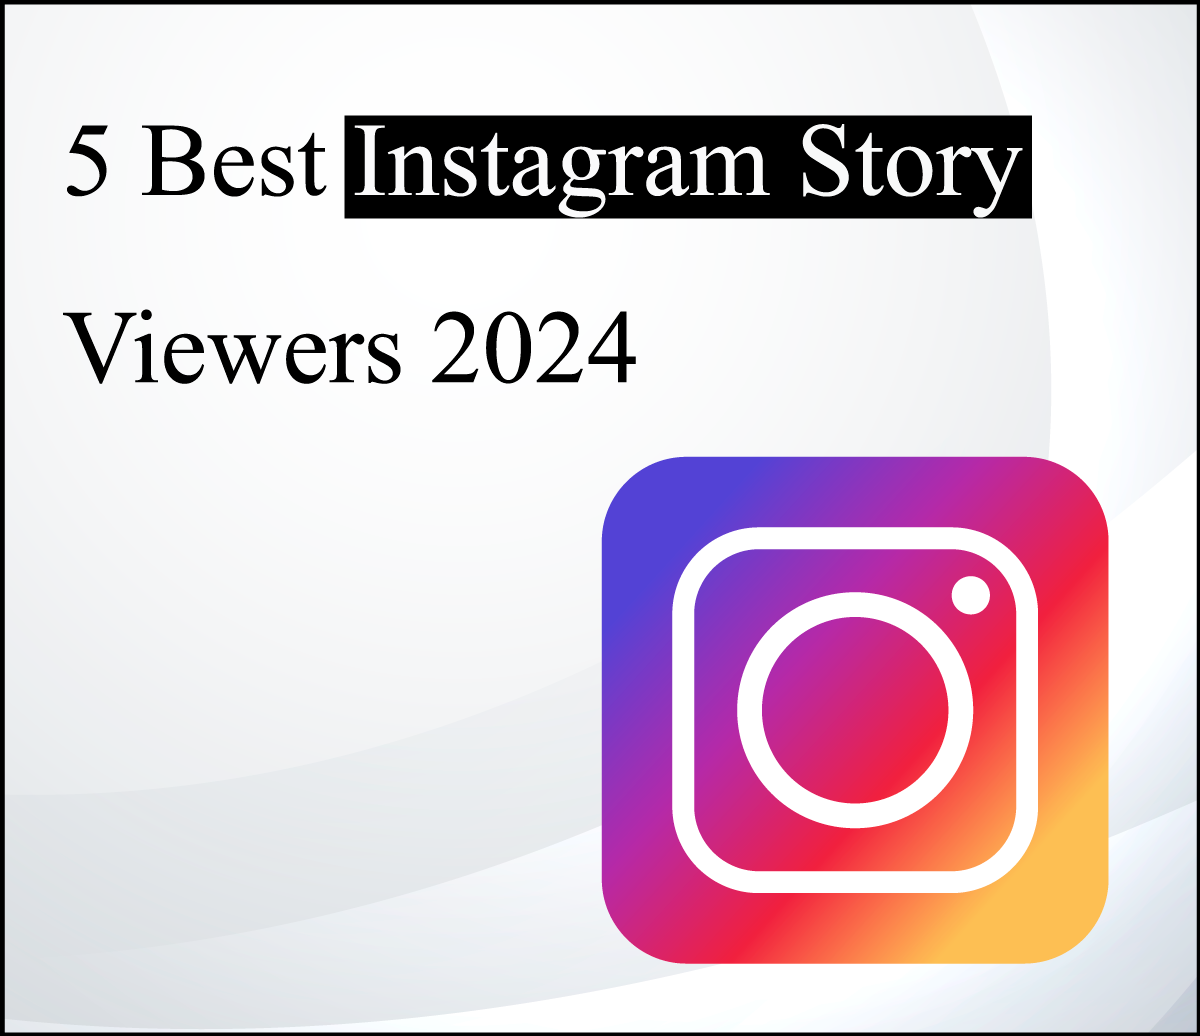 5 Best Instagram Story Viewers 2024